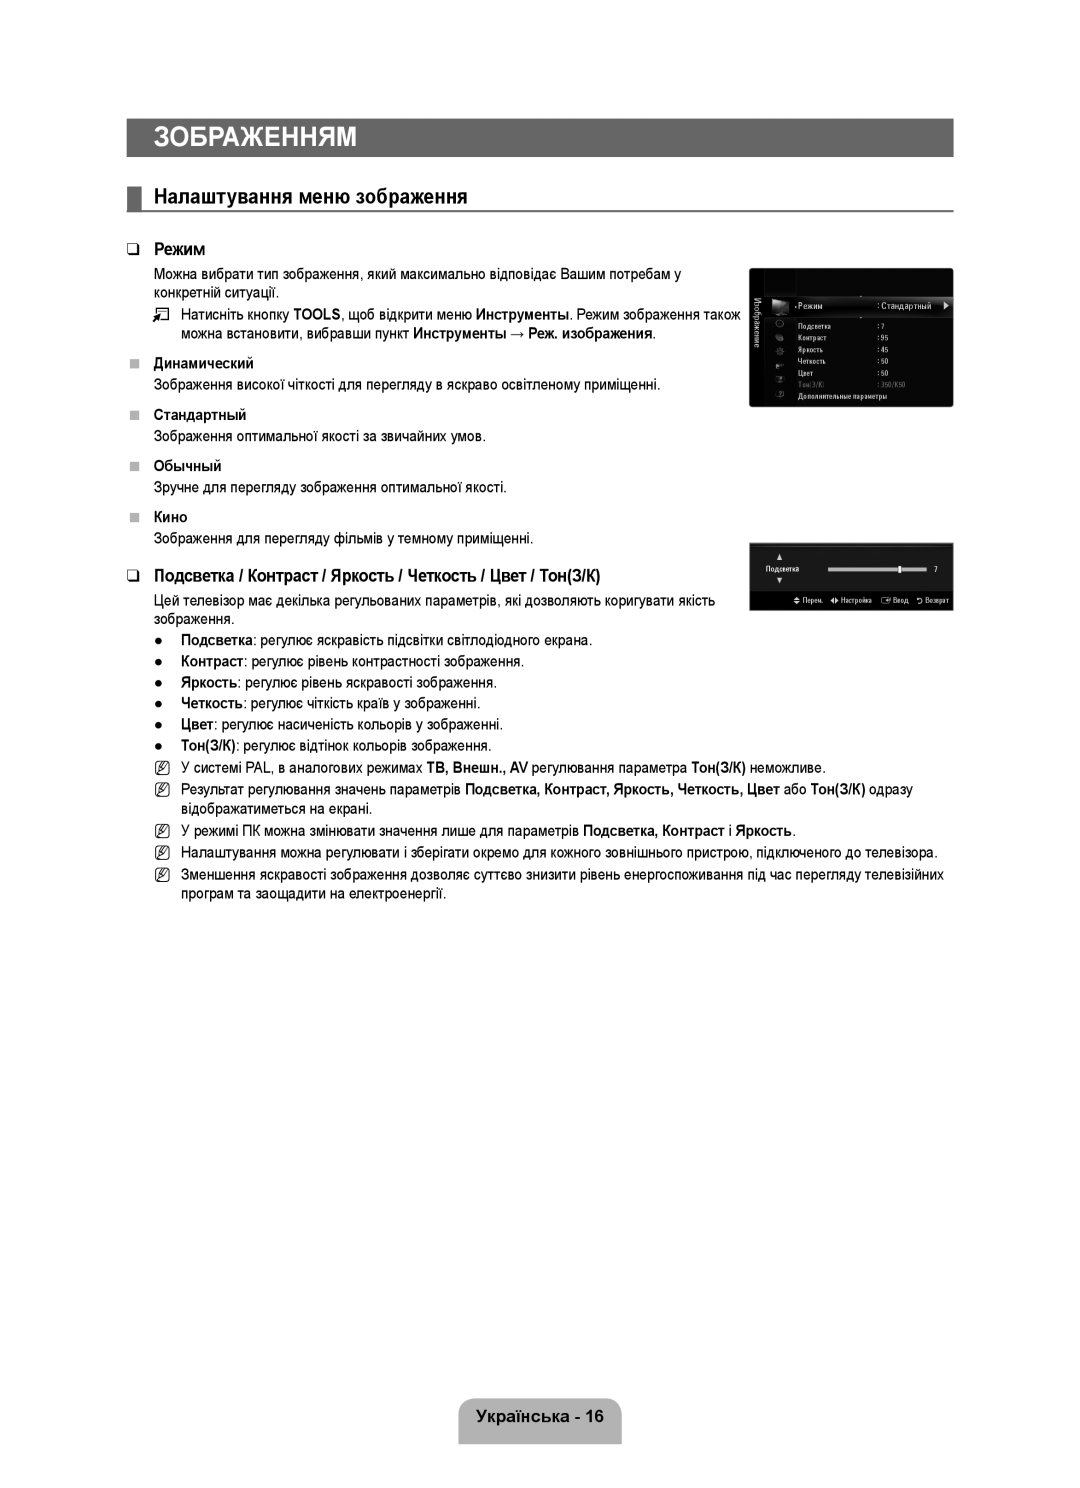 Samsung UE40B6000VWXUA Зображенням, Налаштування меню зображення, Режим, Українська, Динамический, Стандартный, Обычный 